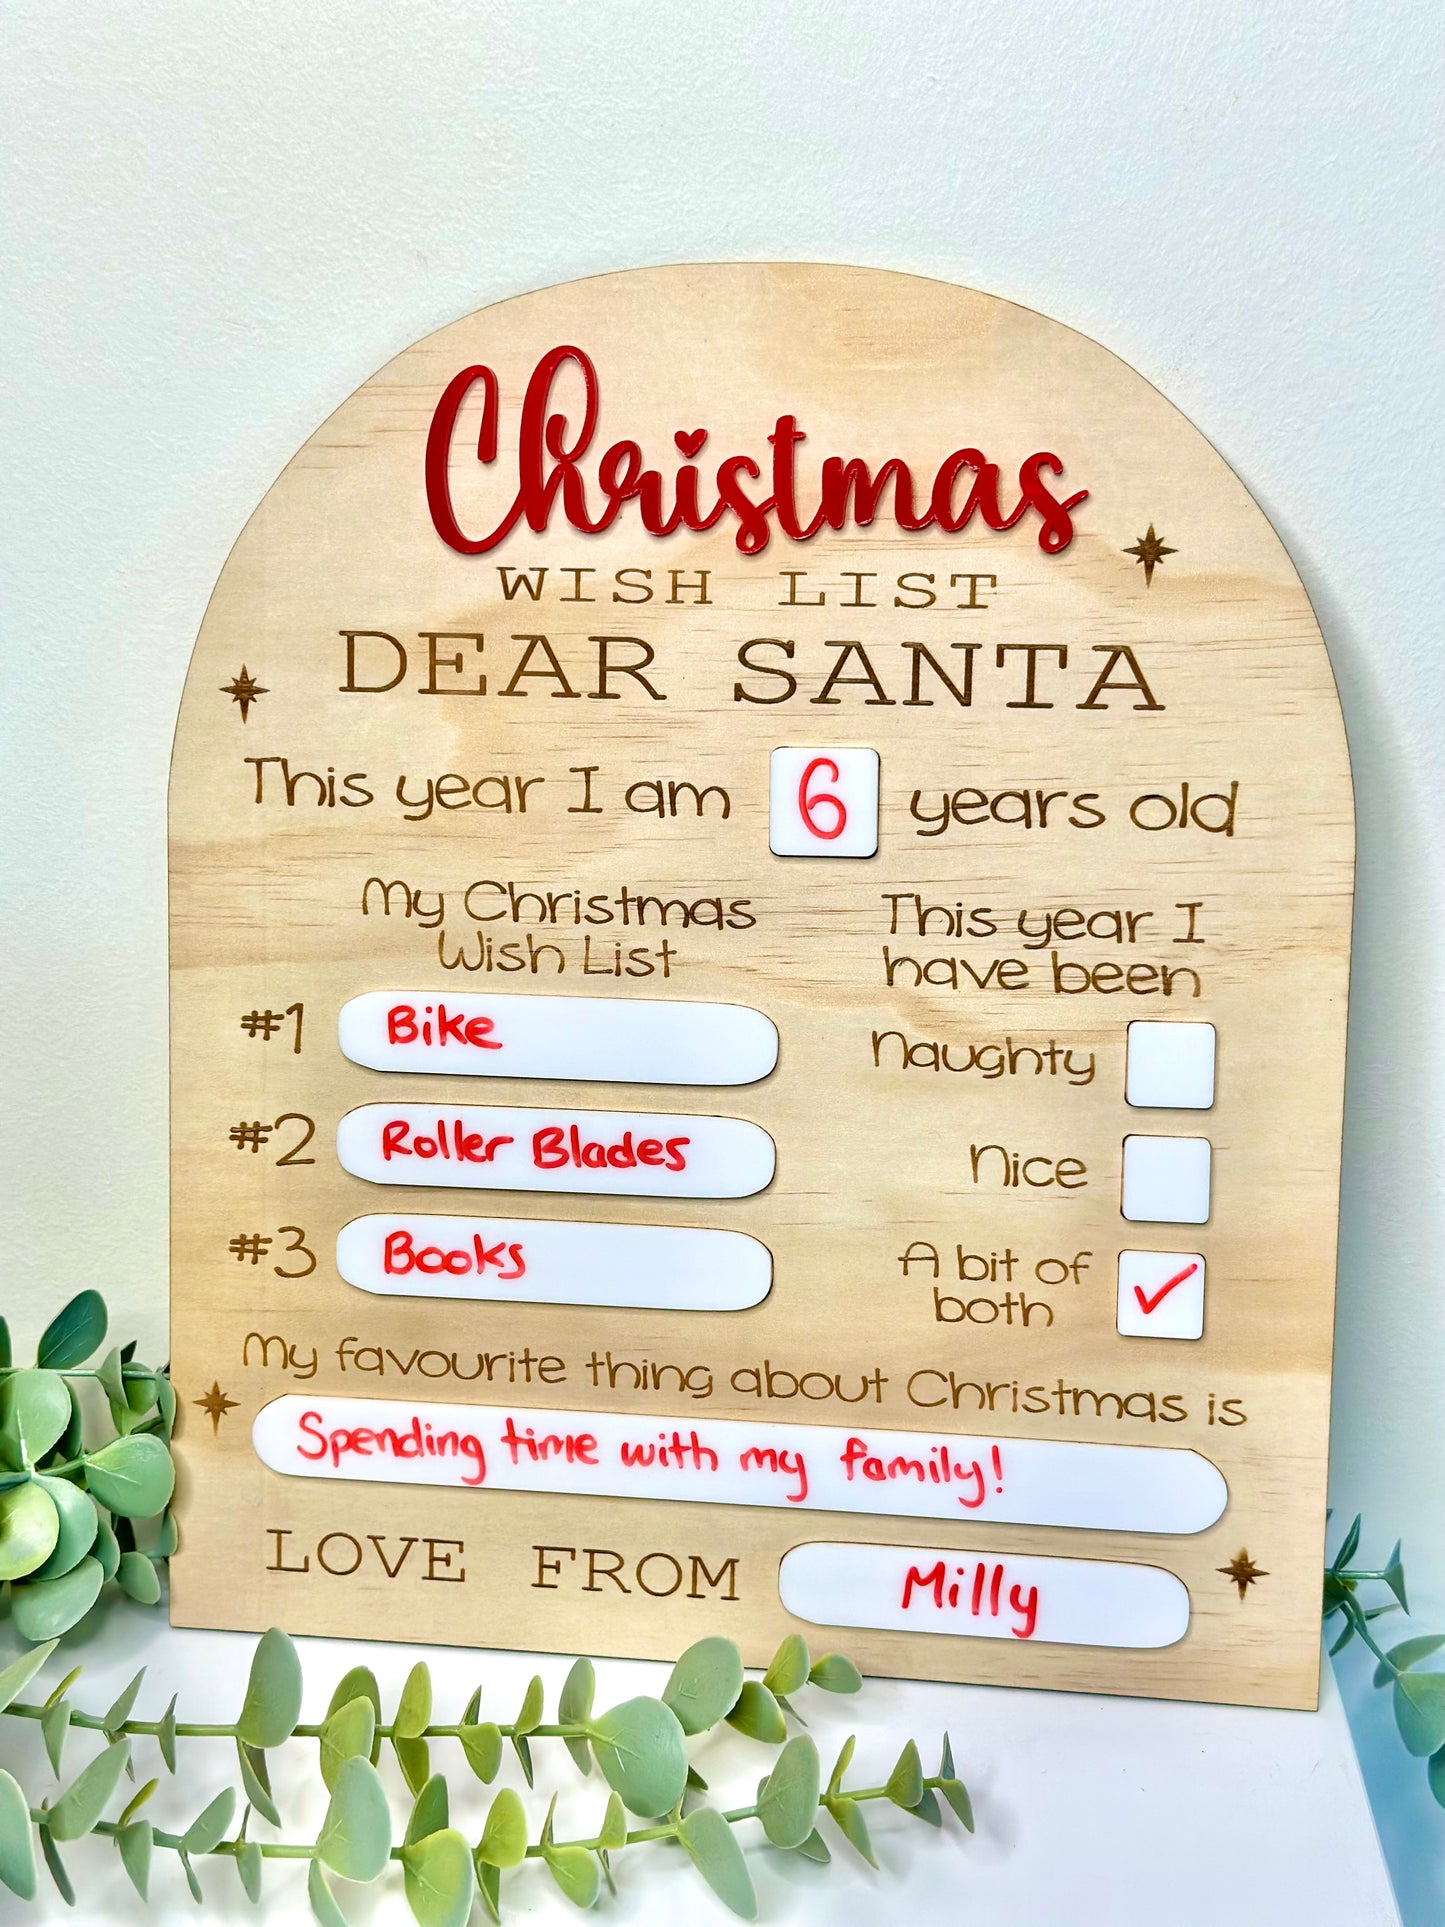 Dear Santa Christmas Wish List - Reusable